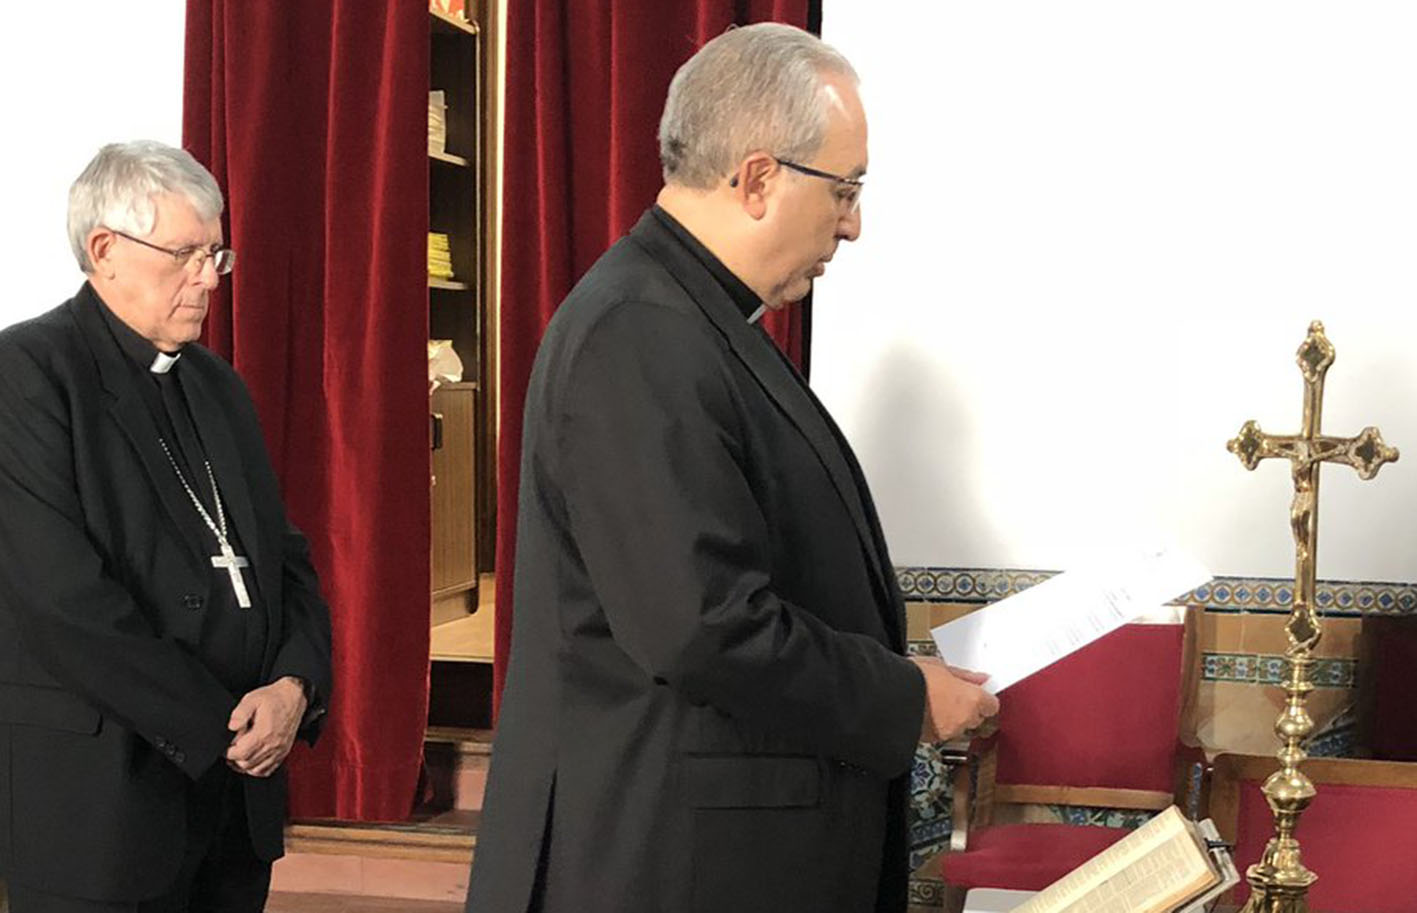 César García Magán toma posesión como nuevo vicario general de la diócesis de Toledo. Junto a él, el arzobispo Braulio Rodríguez.